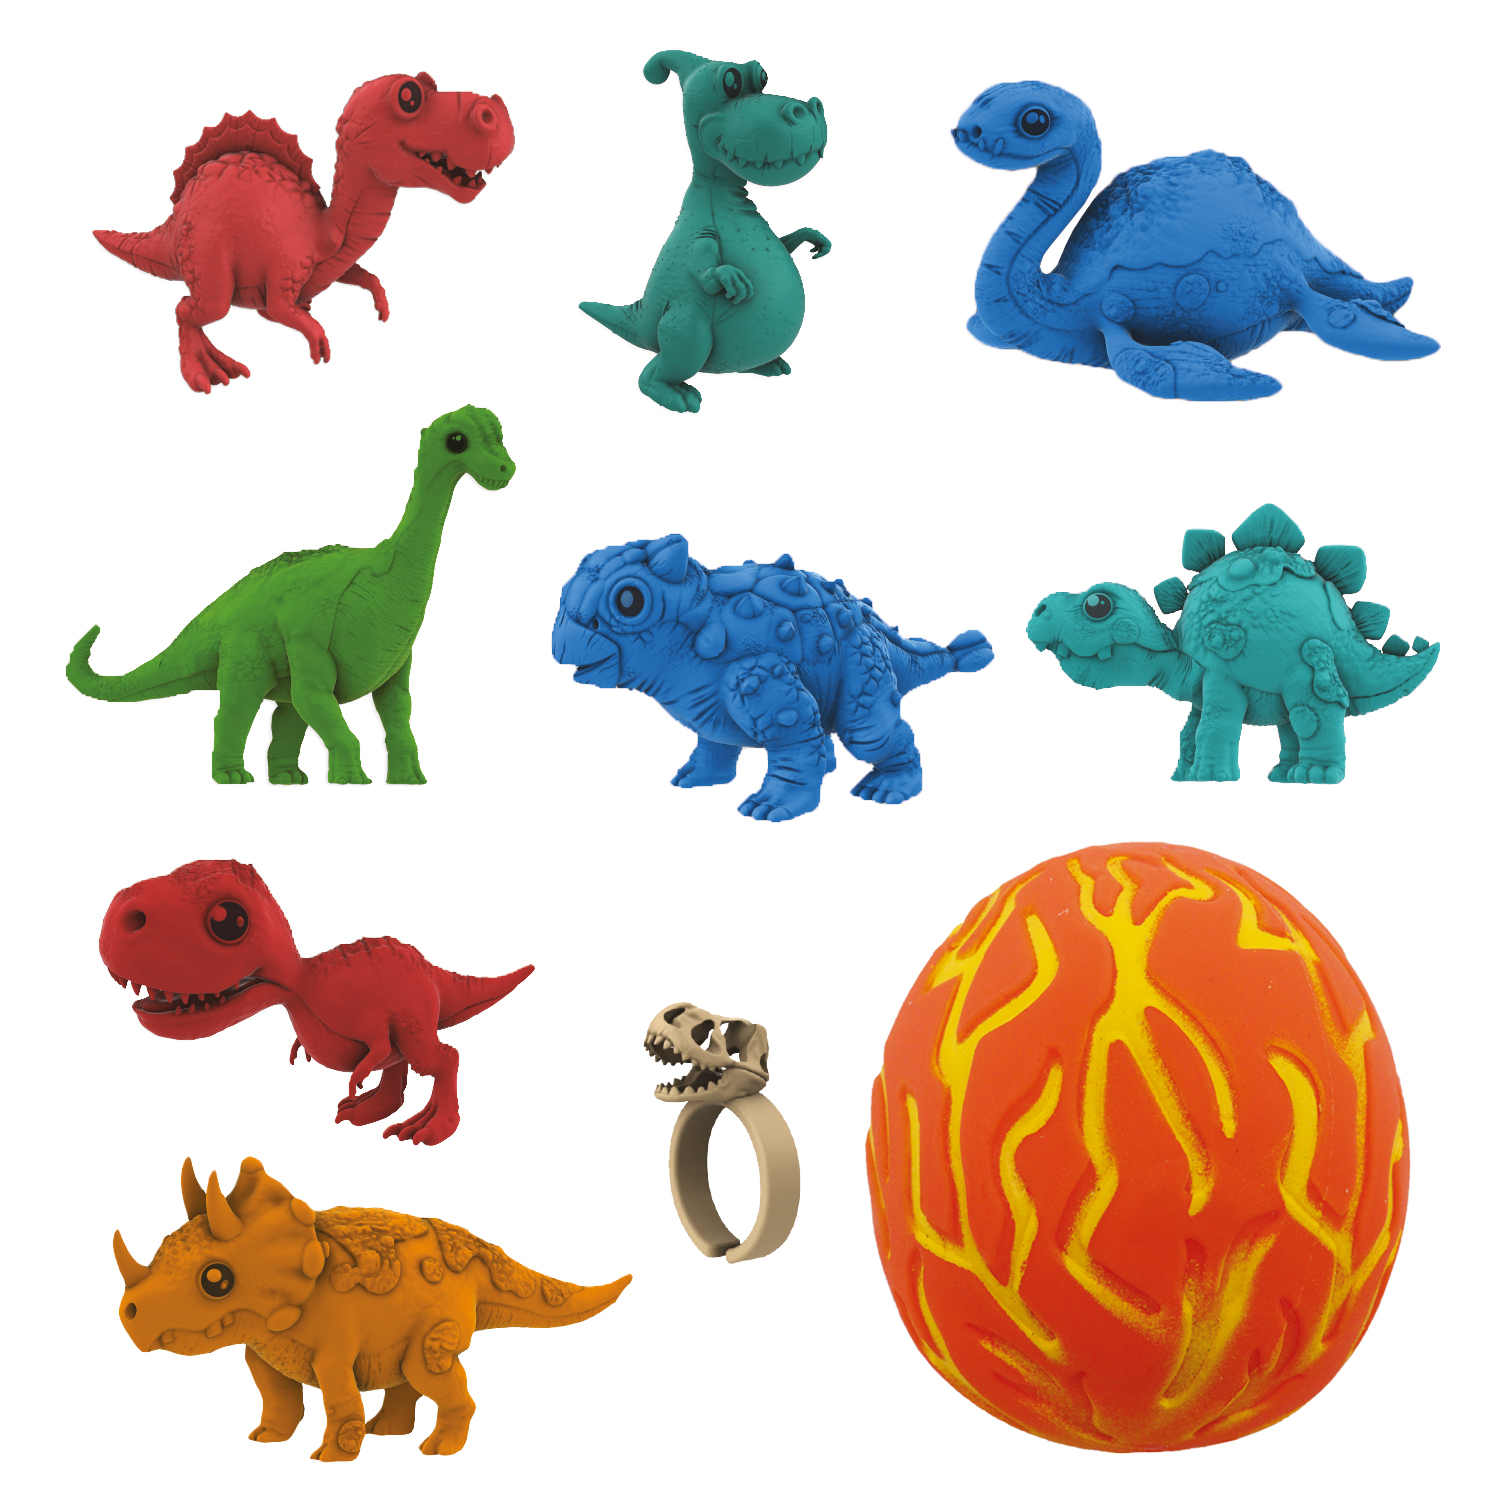 Коллекционная фигурка-сюрприз динозавра в яйце-сквише Lava Egg, 8 героев, Crazy Dino, CD02 коллекционная игрушка сюрприз sbabam яйцо трансформер динозавры